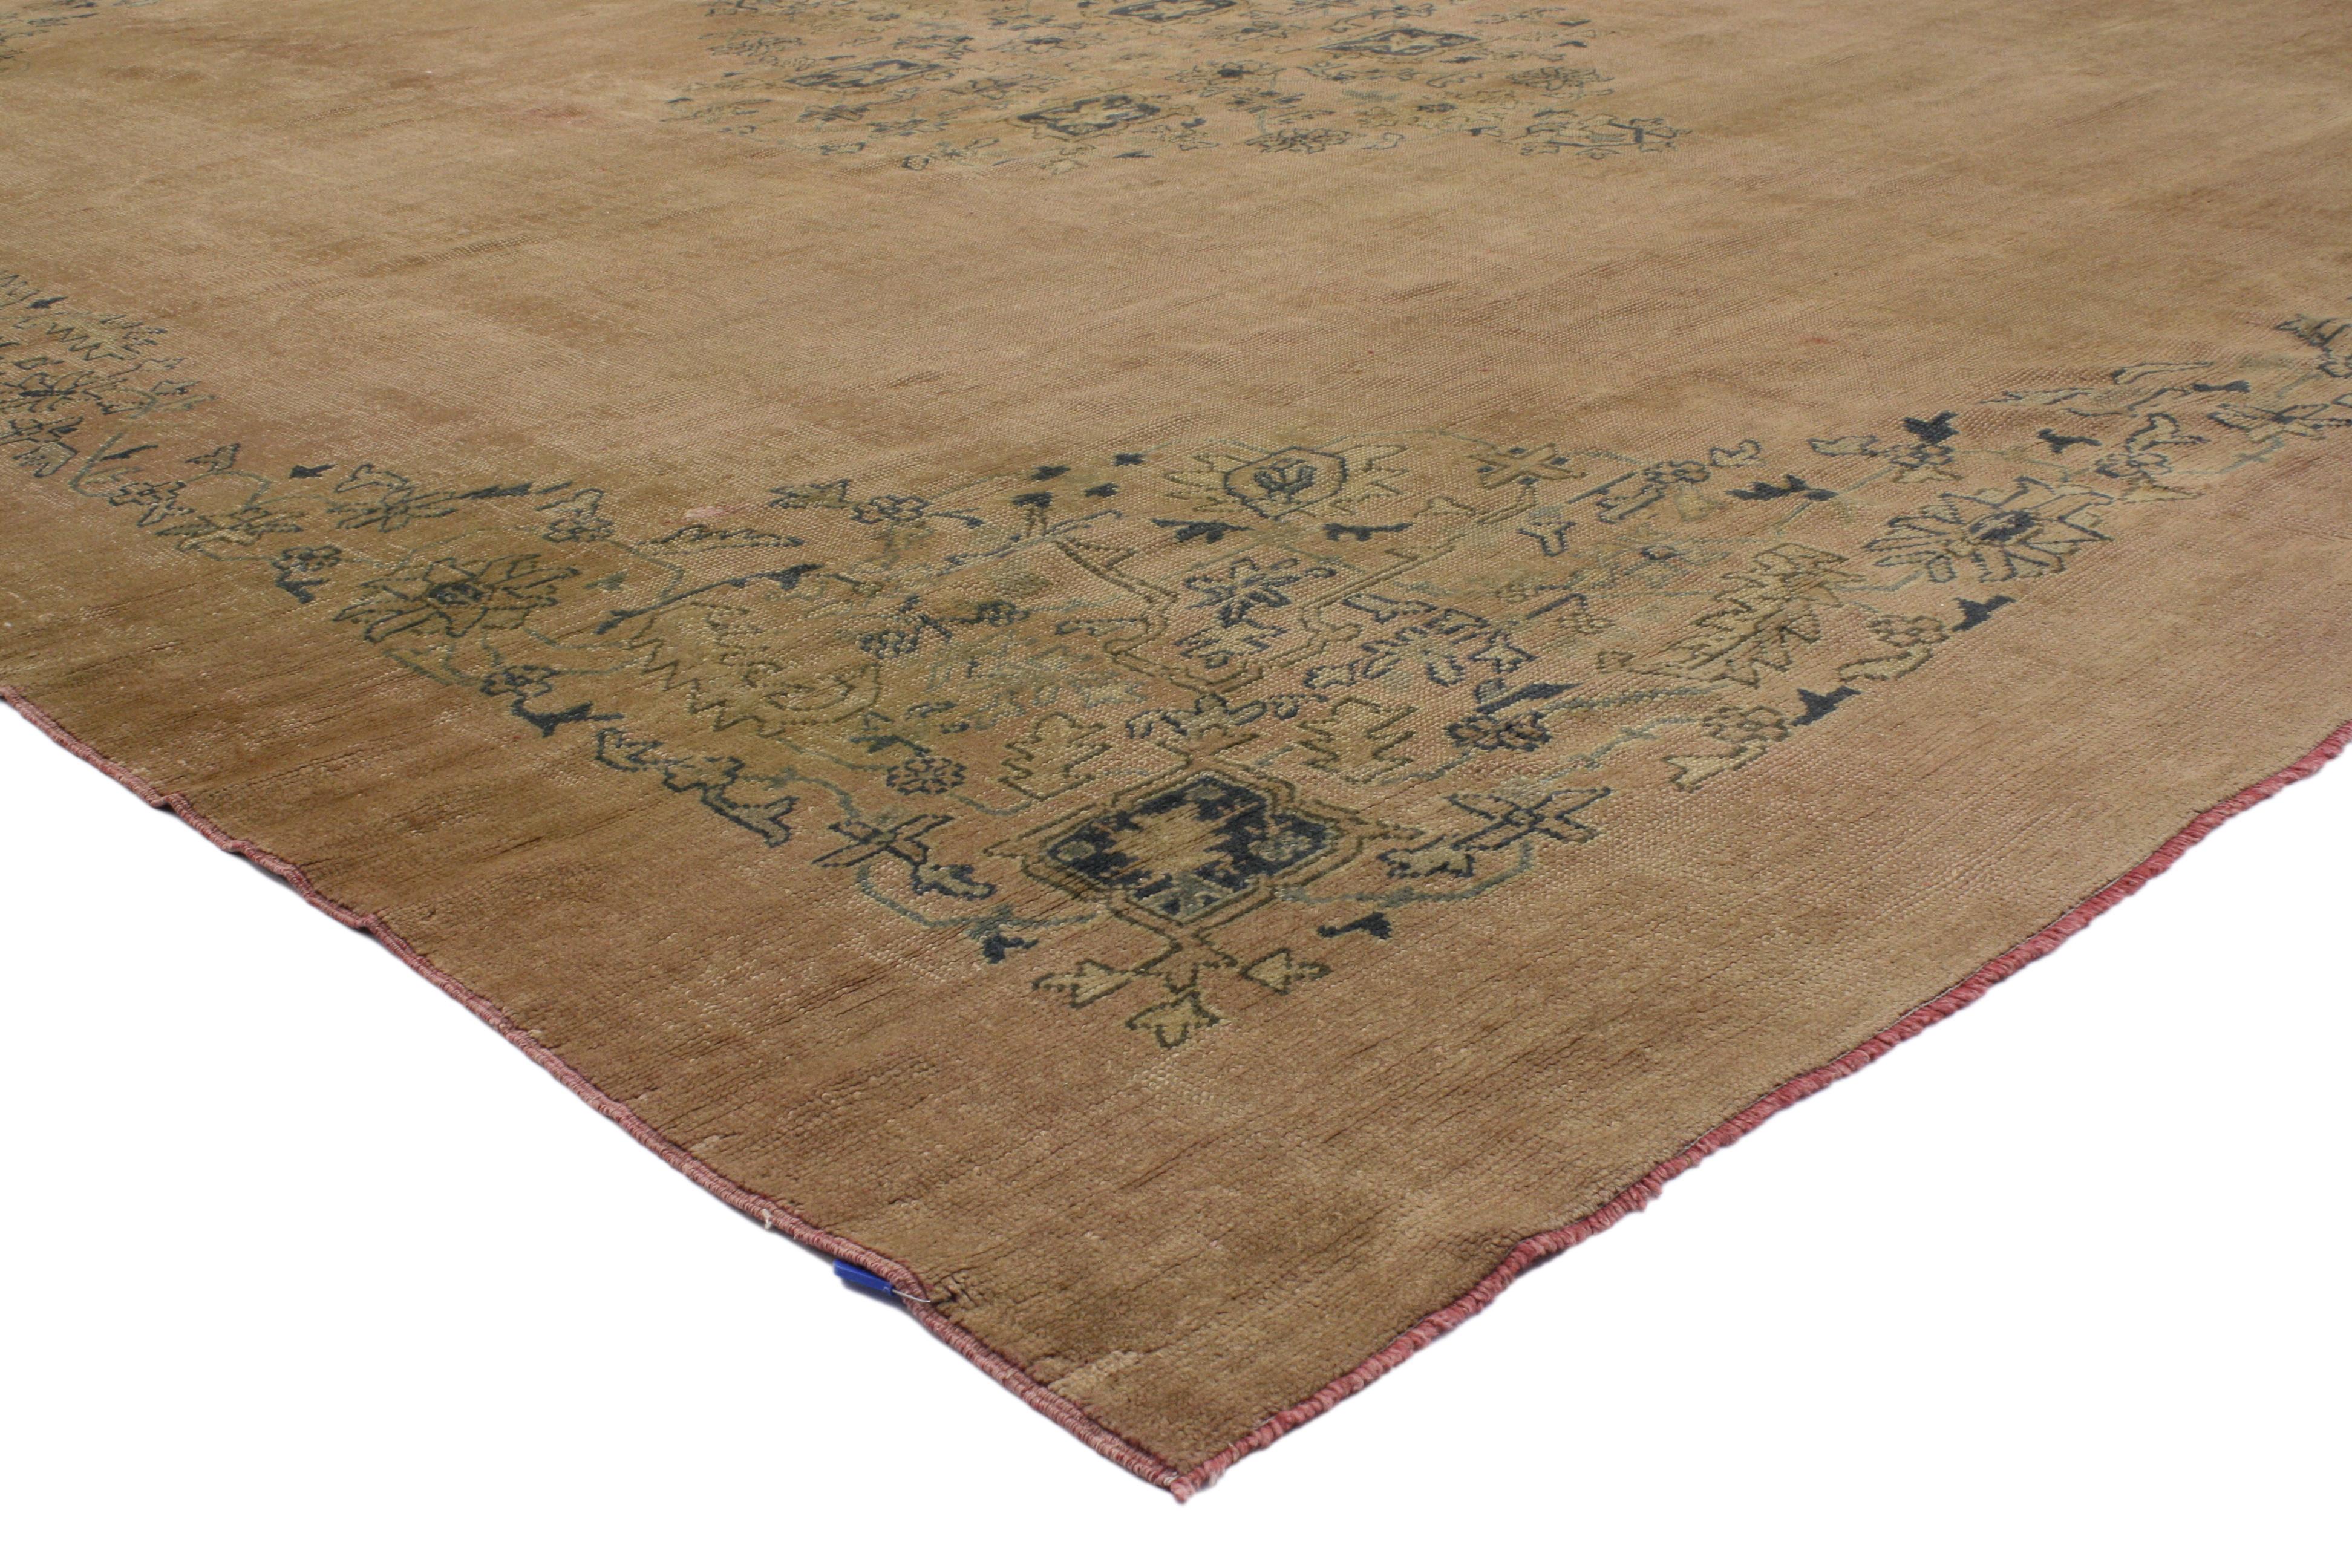 50214 Antique tapis turc Oushak de style rustique, romantique et géorgien. Une belle combinaison de teintes roses rustiques et de bleus doux dans ce tapis Oushak turc ancien en laine noué à la main crée une ambiance délicate et romantique sans